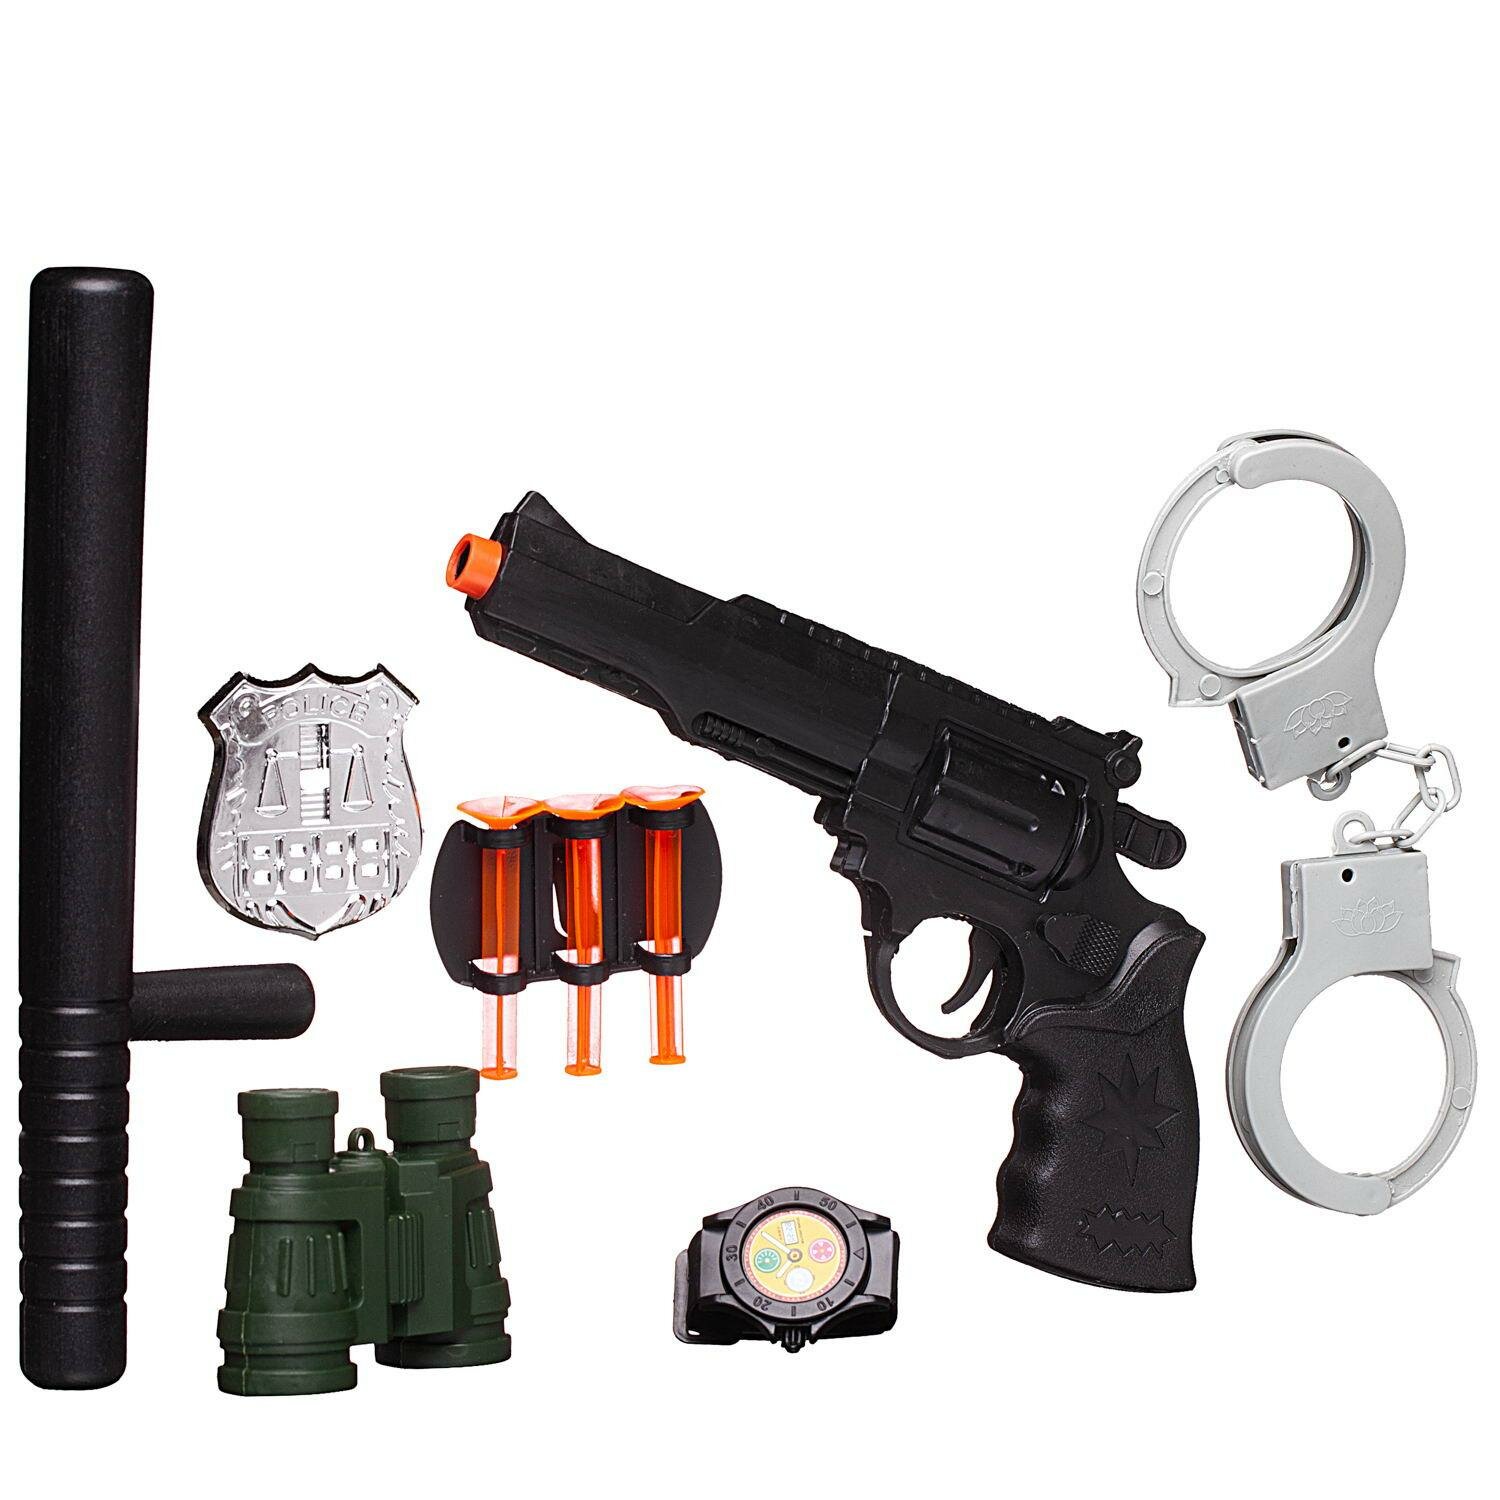 Игровой набор Junfa Полиция 10 предметов, на блистере 338-04-no